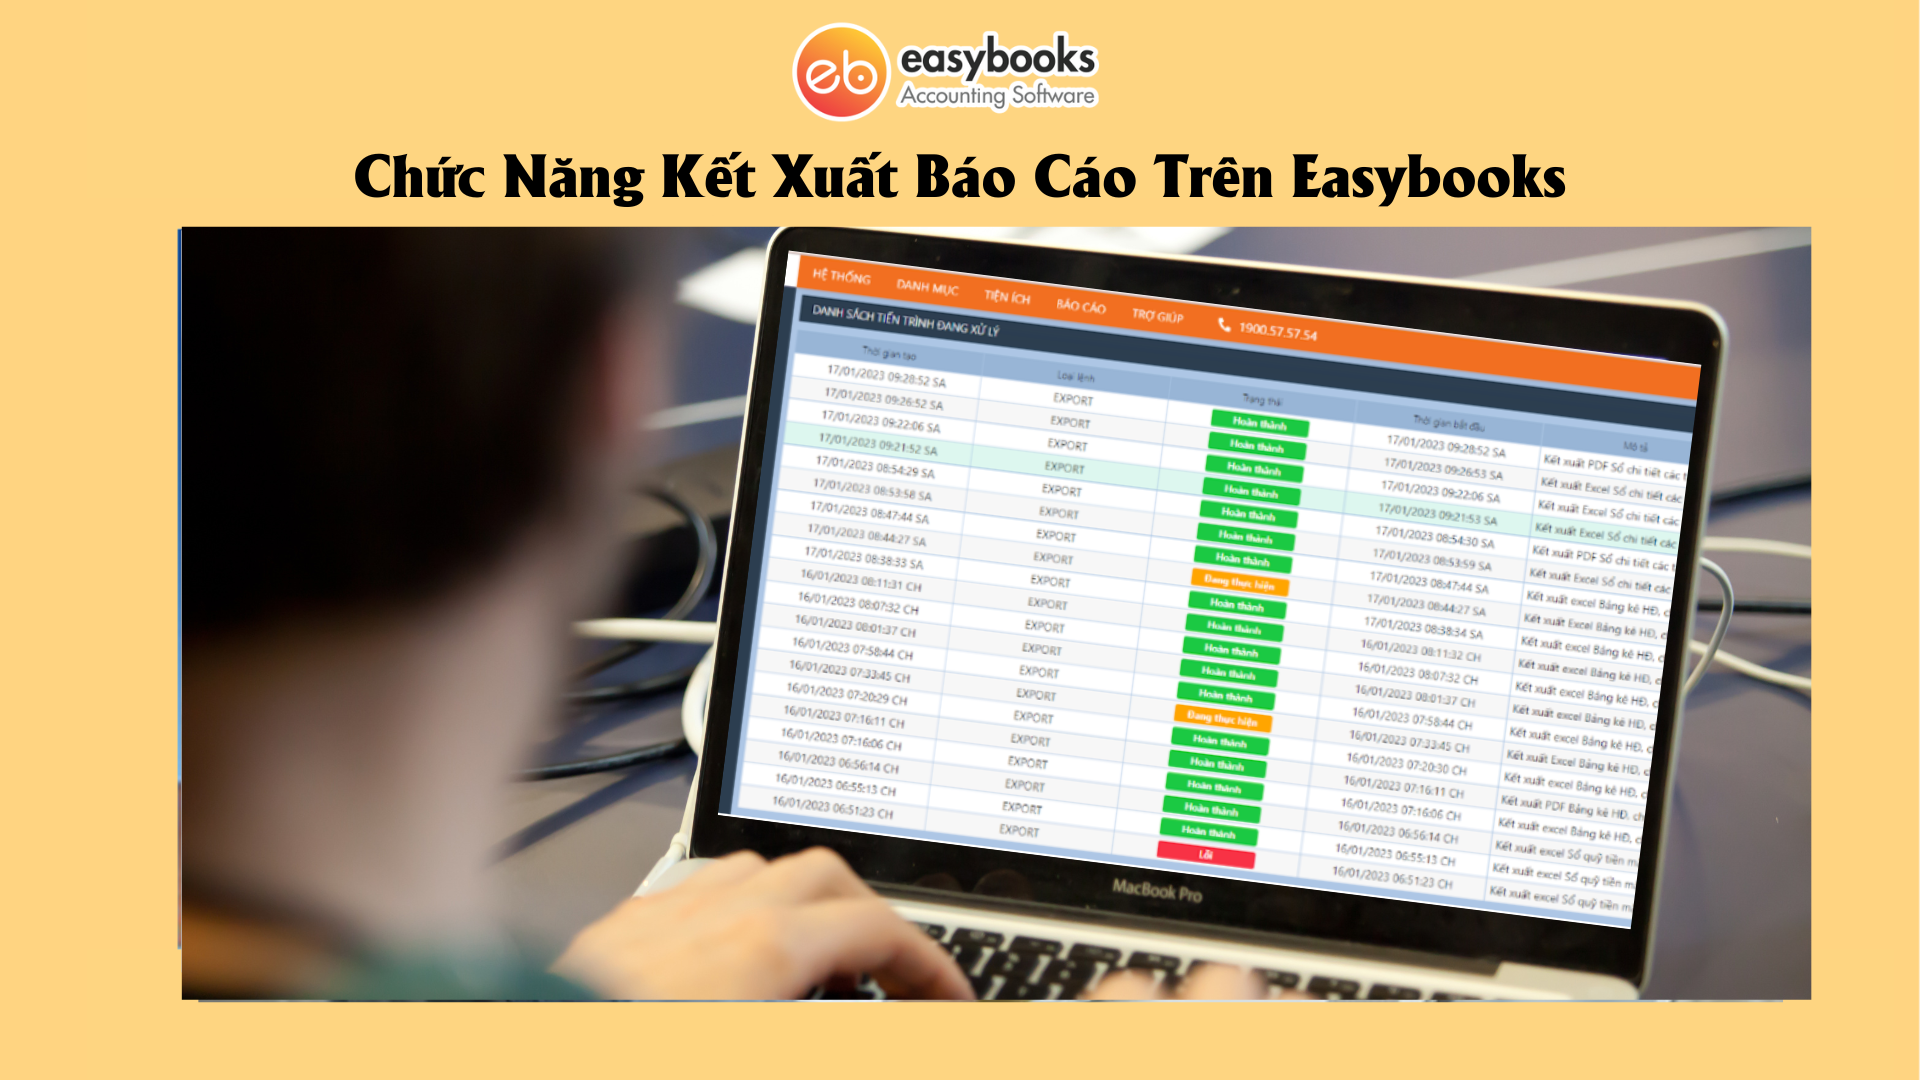 Chuc-Nang-Ket-Xuat-Bao-Cao-Tren-Easybooks